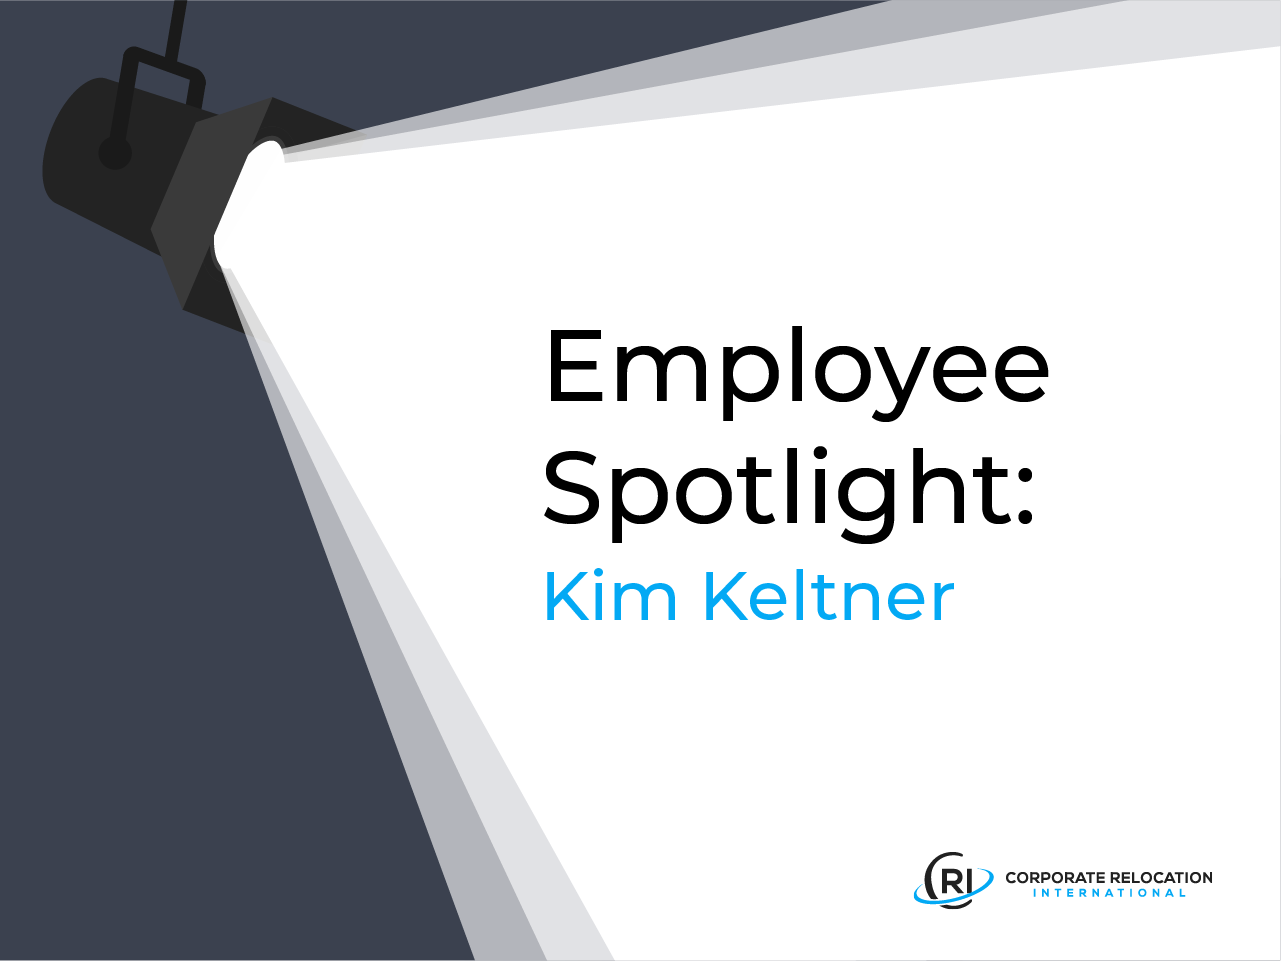 Kim Keltner - Employee Spotlight